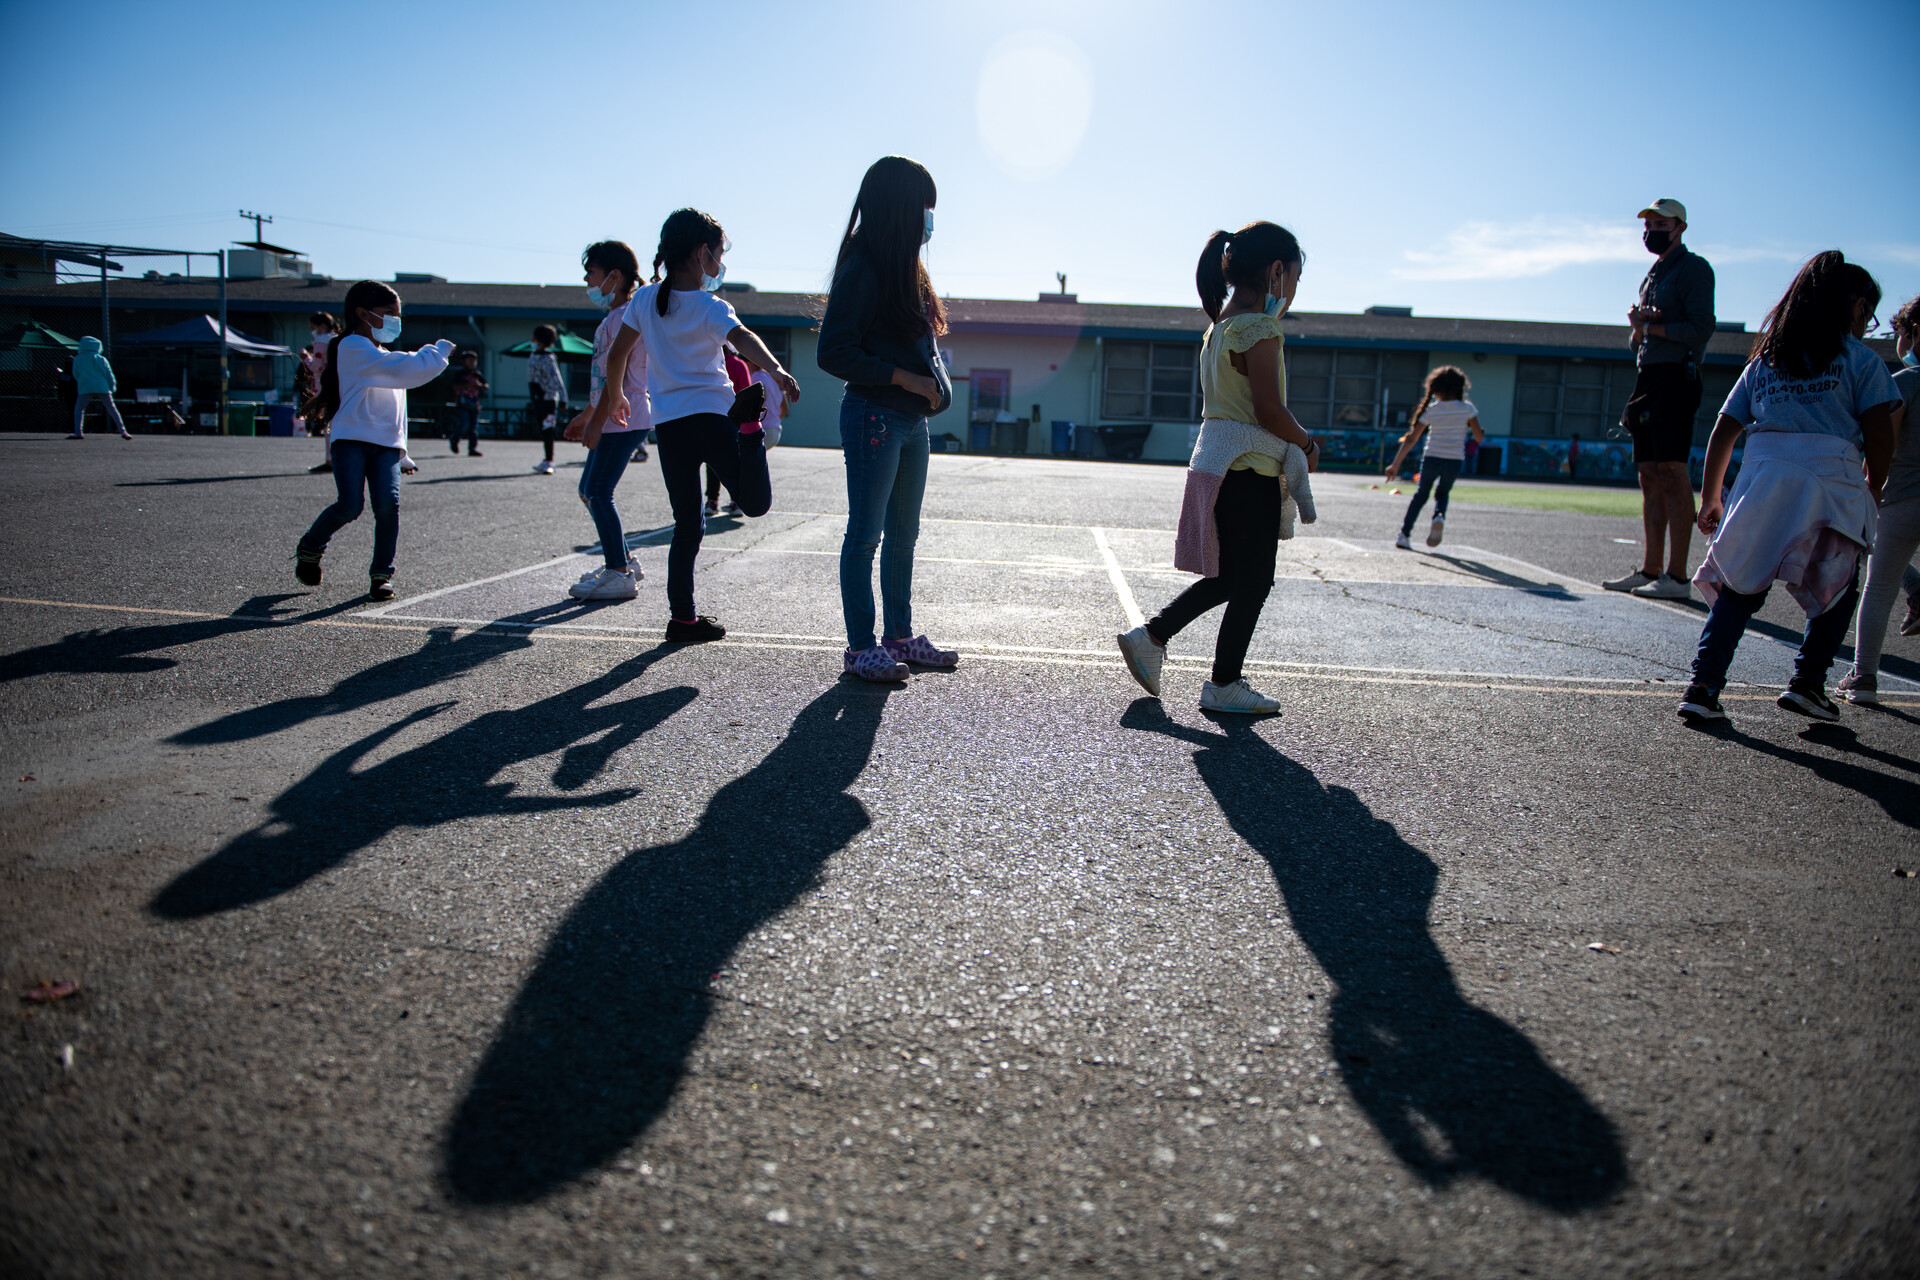 Children wearing masks play in a schoolyard on asphalt.